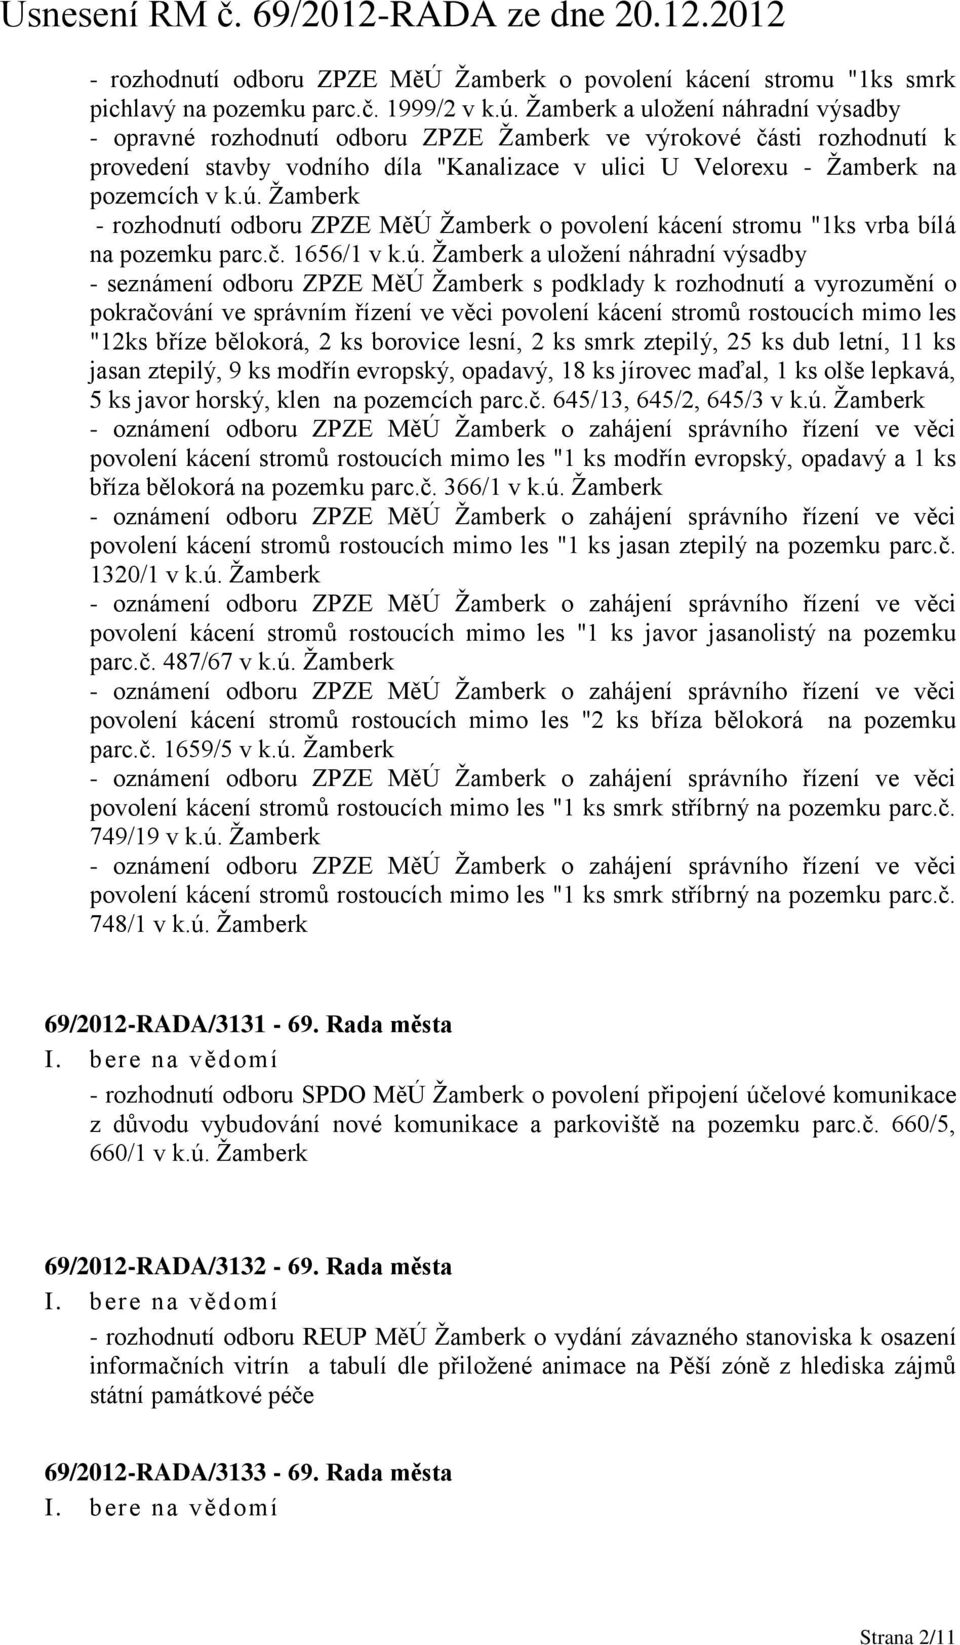 Žamberk - rozhodnutí odboru ZPZE MěÚ Žamberk o povolení kácení stromu "1ks vrba bílá na pozemku parc.č. 1656/1 v k.ú.